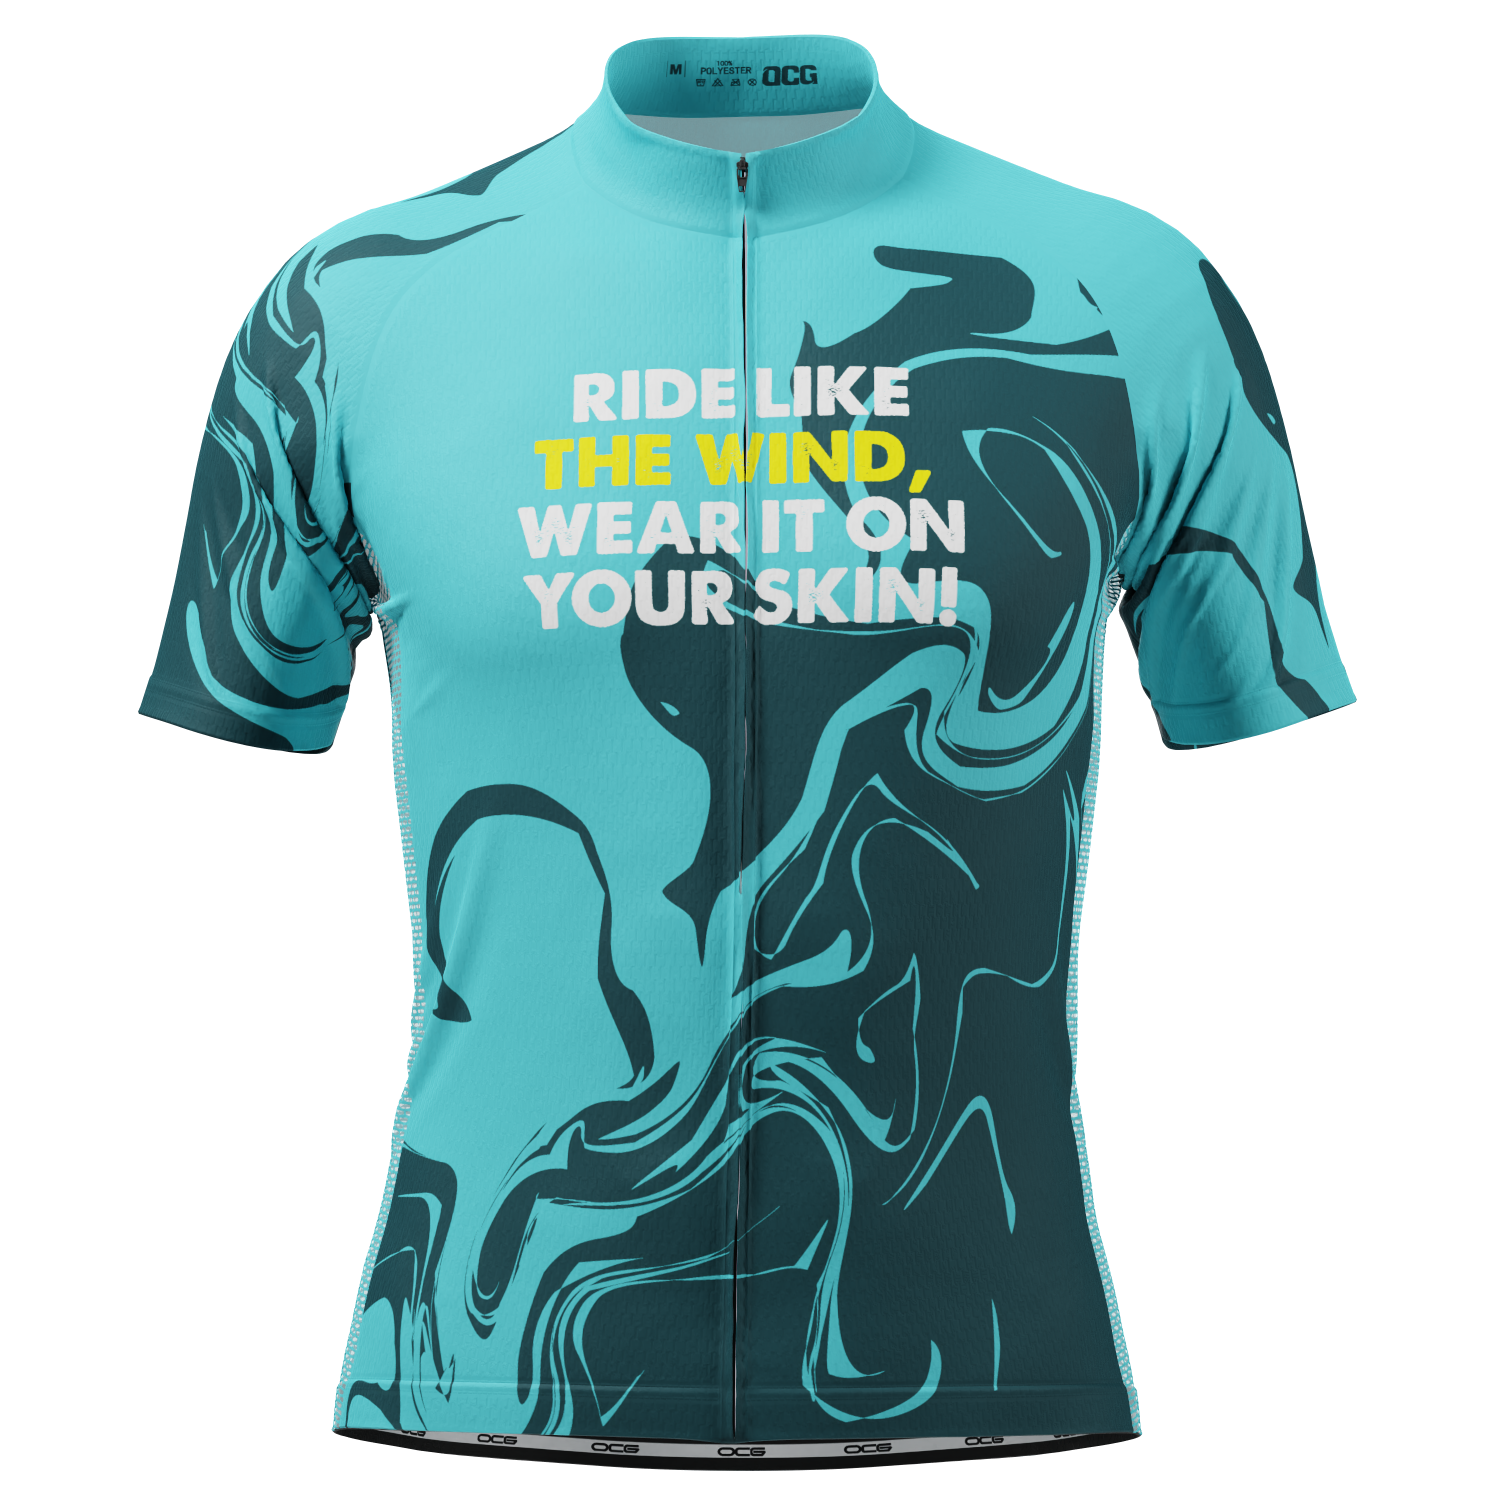 Men's Ride Like The Wind, Wear It On Your Skin! Short Sleeve Cycling Jersey